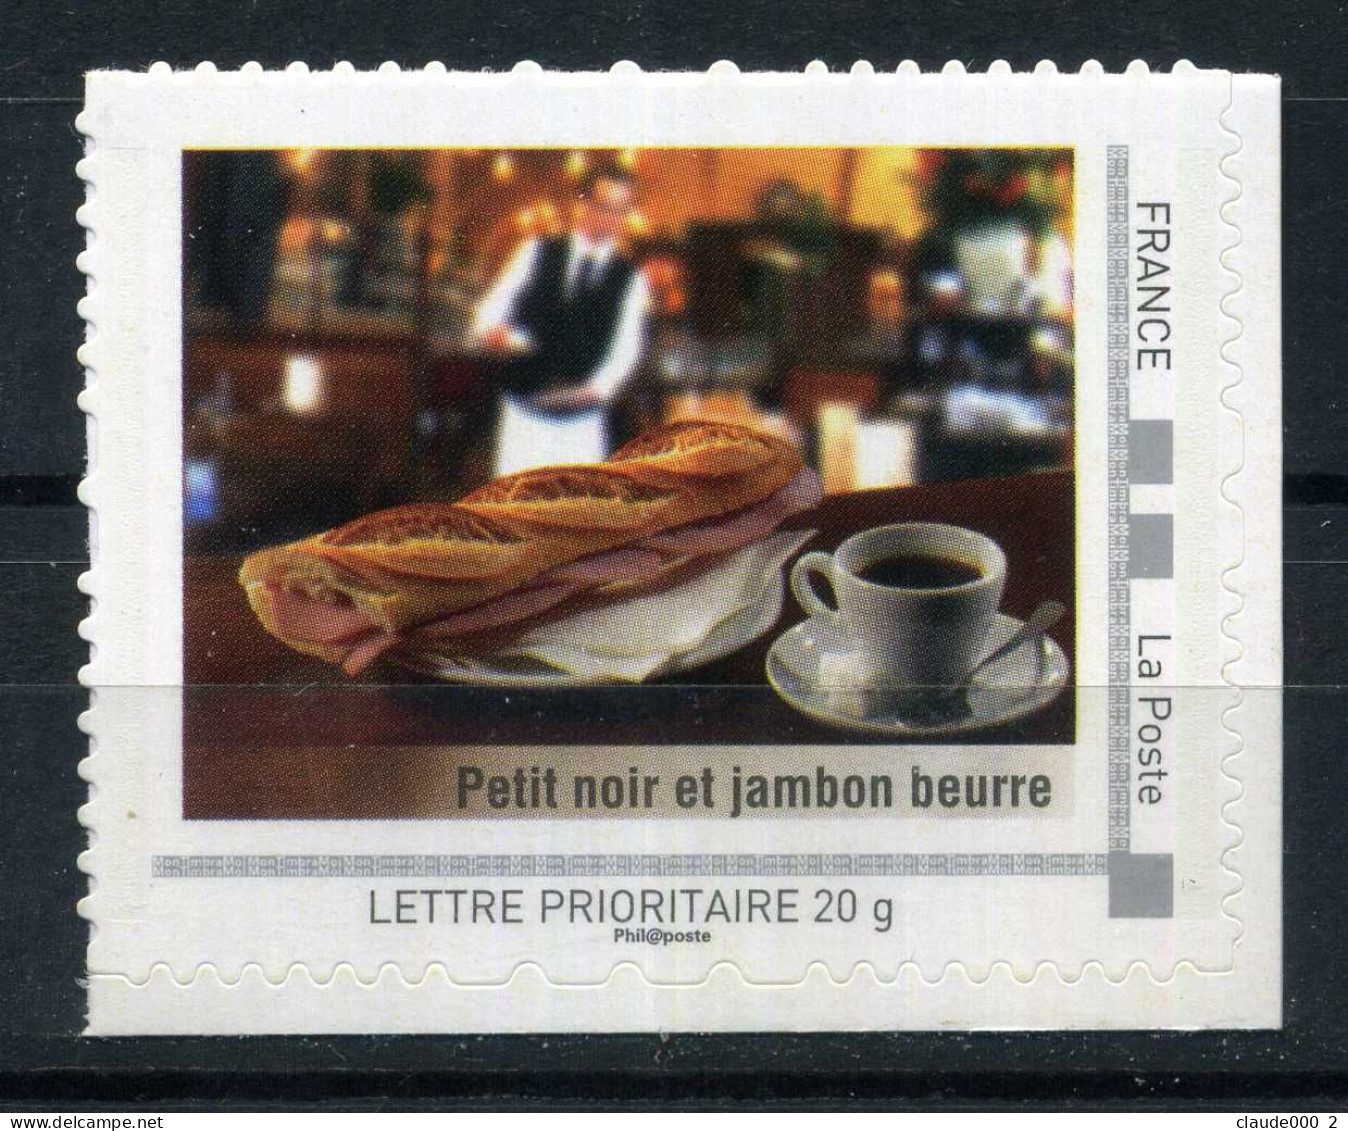 Petit Noir Et Jambon Beurre  Adhésif Neuf ** . Collector Paris 2009 - Collectors